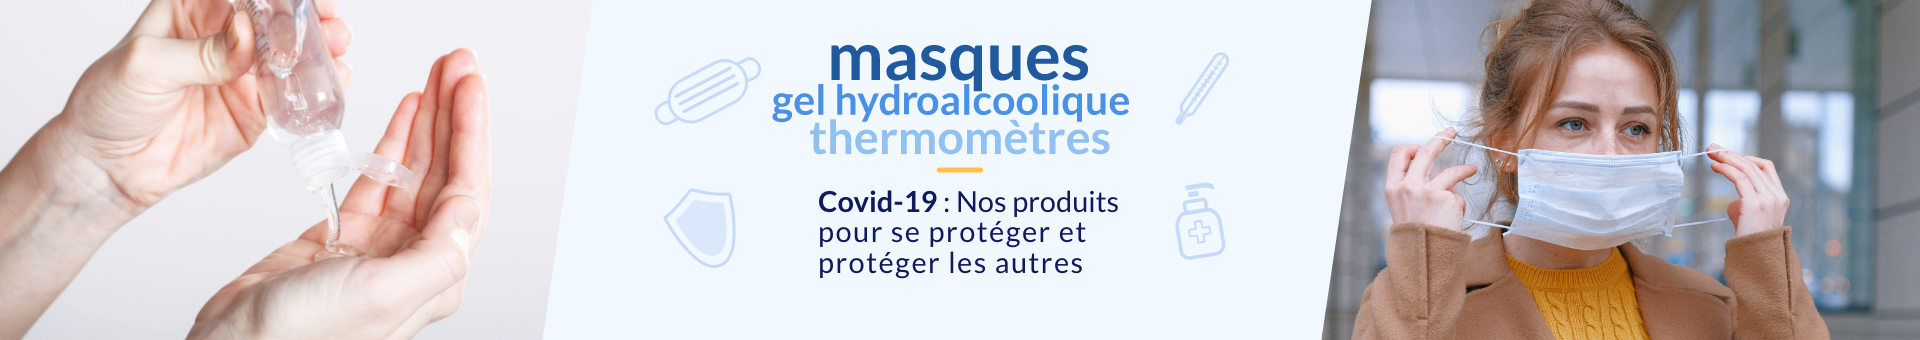 Sélection de produits contre la COVID 19. Masque de fabrication française,  unir tellus, gel hydroalcoolique, thermomètre pour le suivi de la température